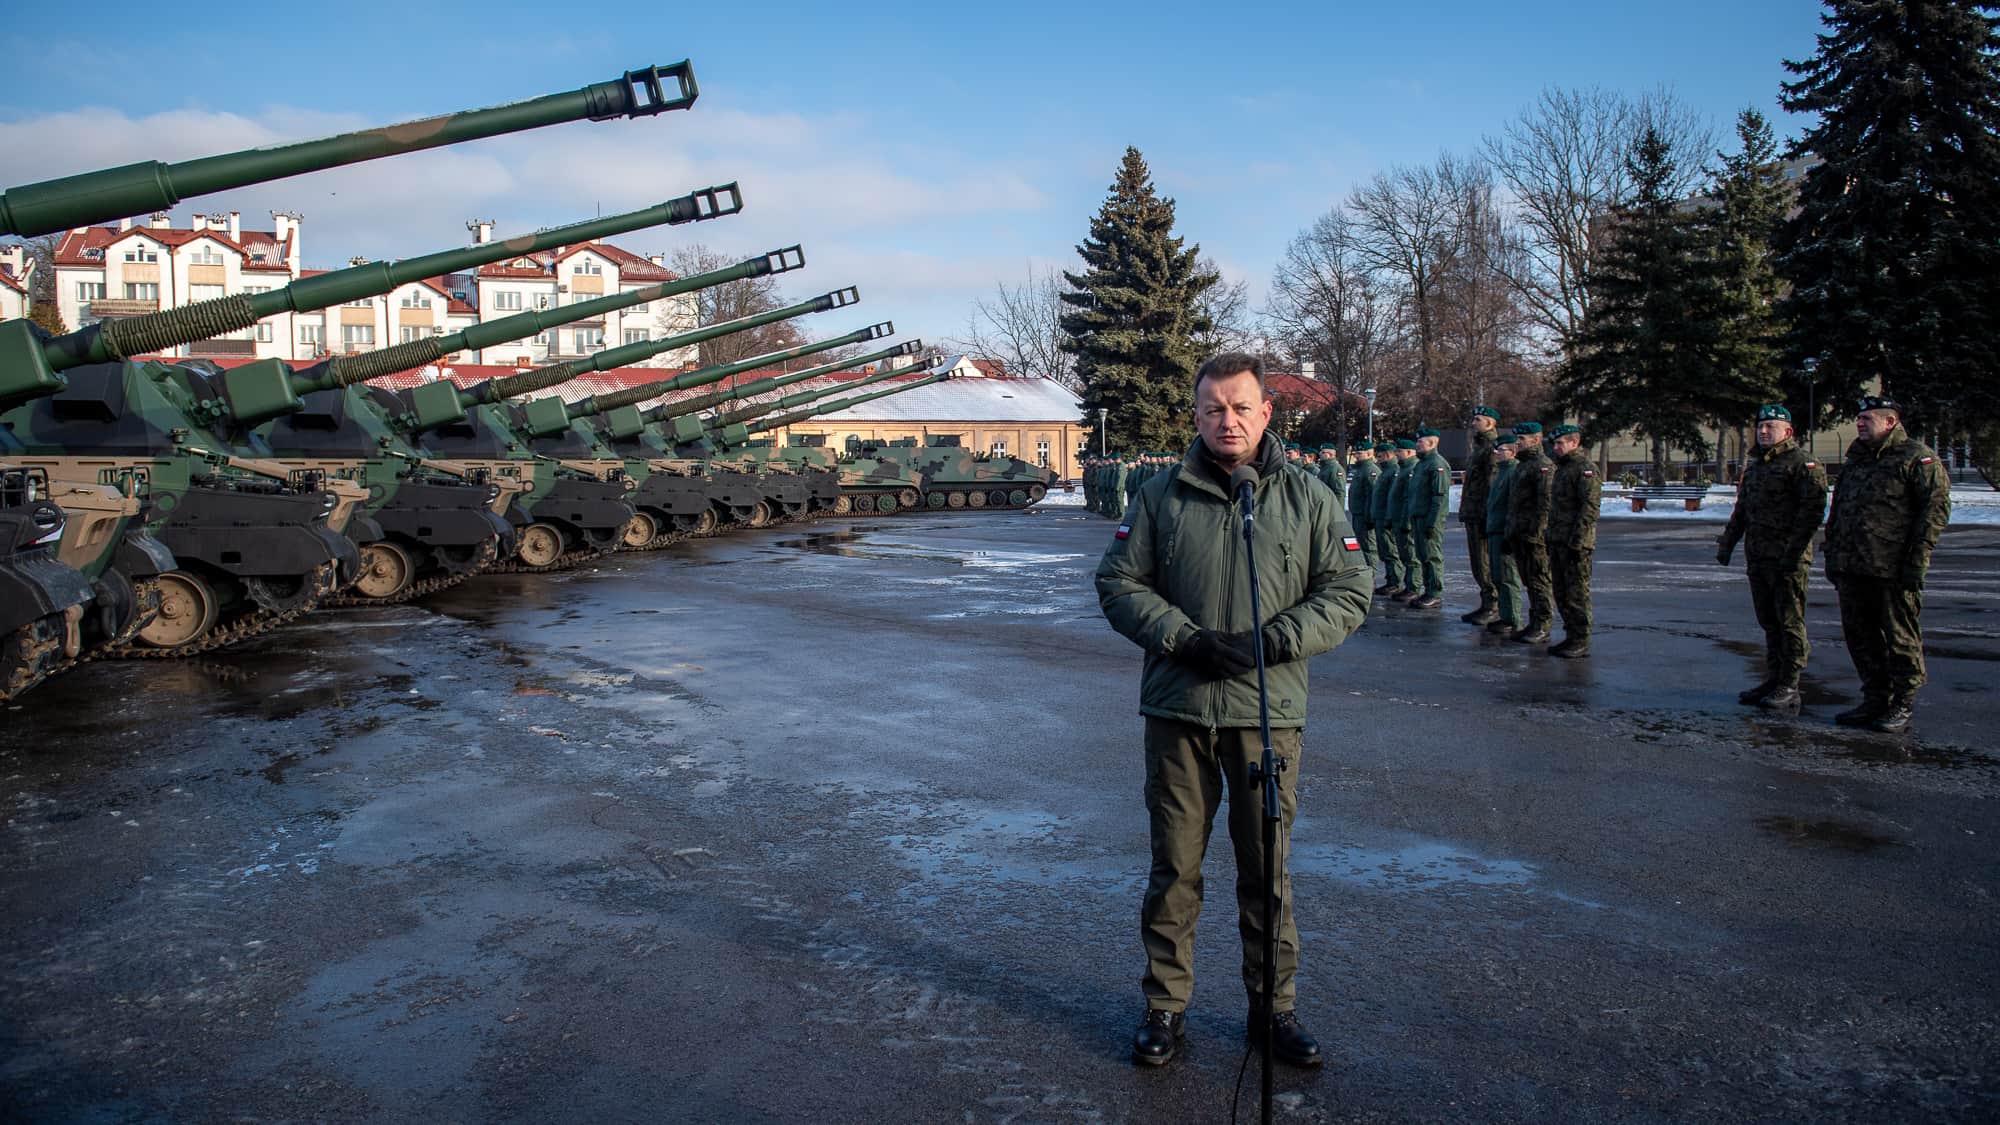 155-мм САУ Krab та субутні машини передані у 21-у бригаду армії Польщі